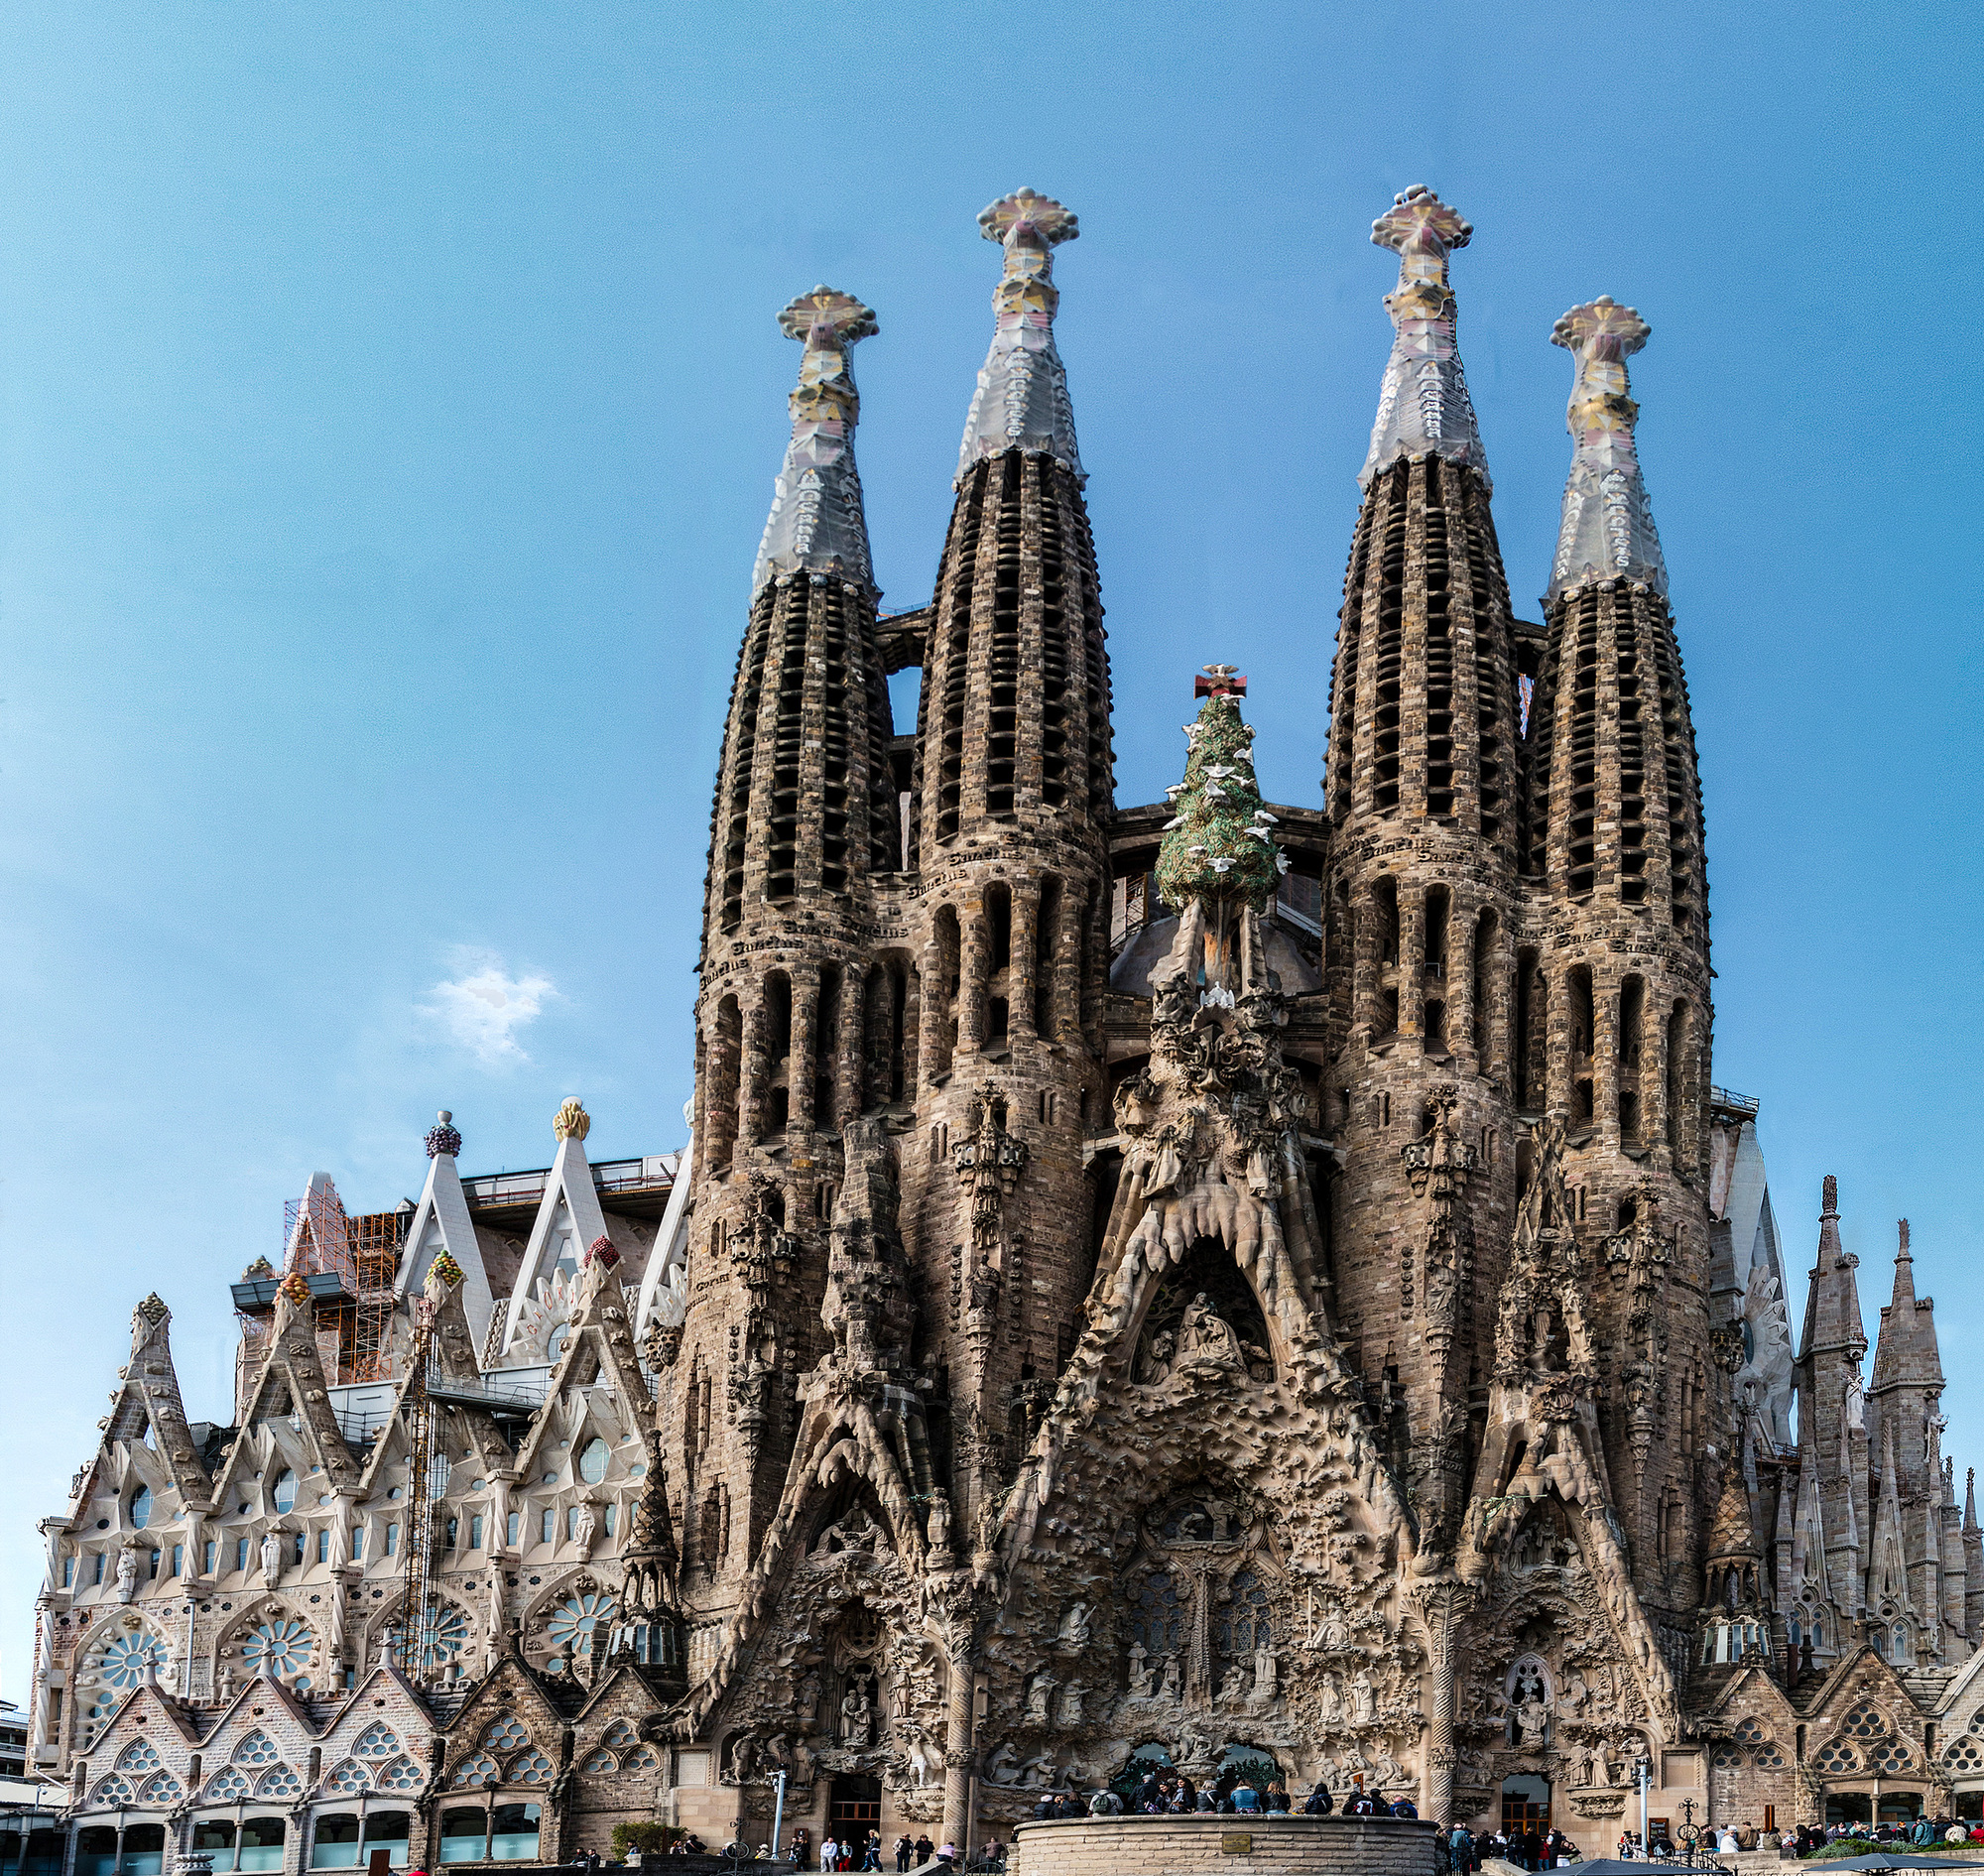 Tourists flock at the entrance of Sagrada Familia